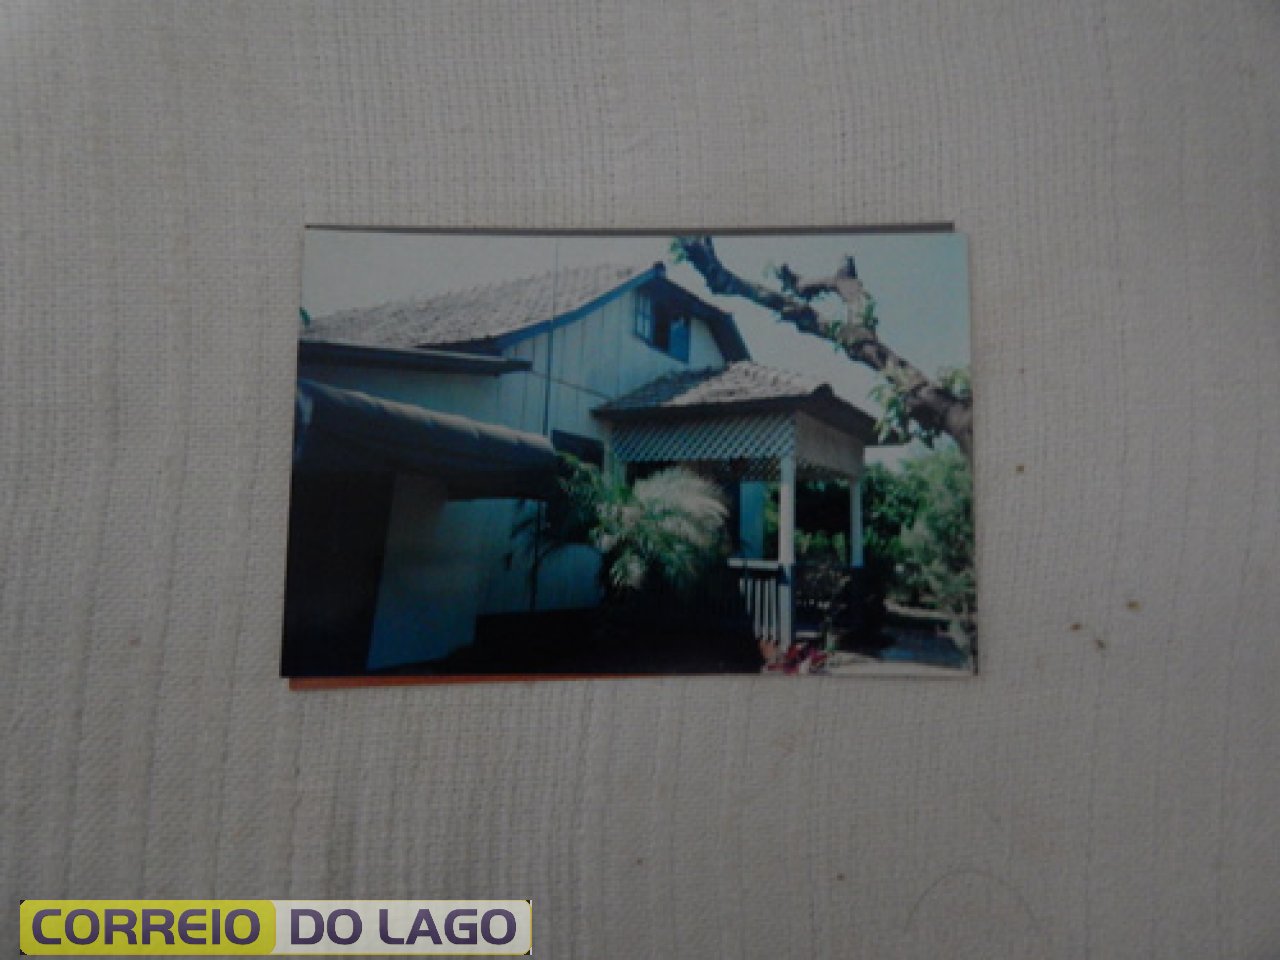 Casa estilo alemã construída em 1963 por Ervino Hugo Dieterich na rua Paraguai. Sofreu algumas alterações. Observe a foto abaixo e compare.